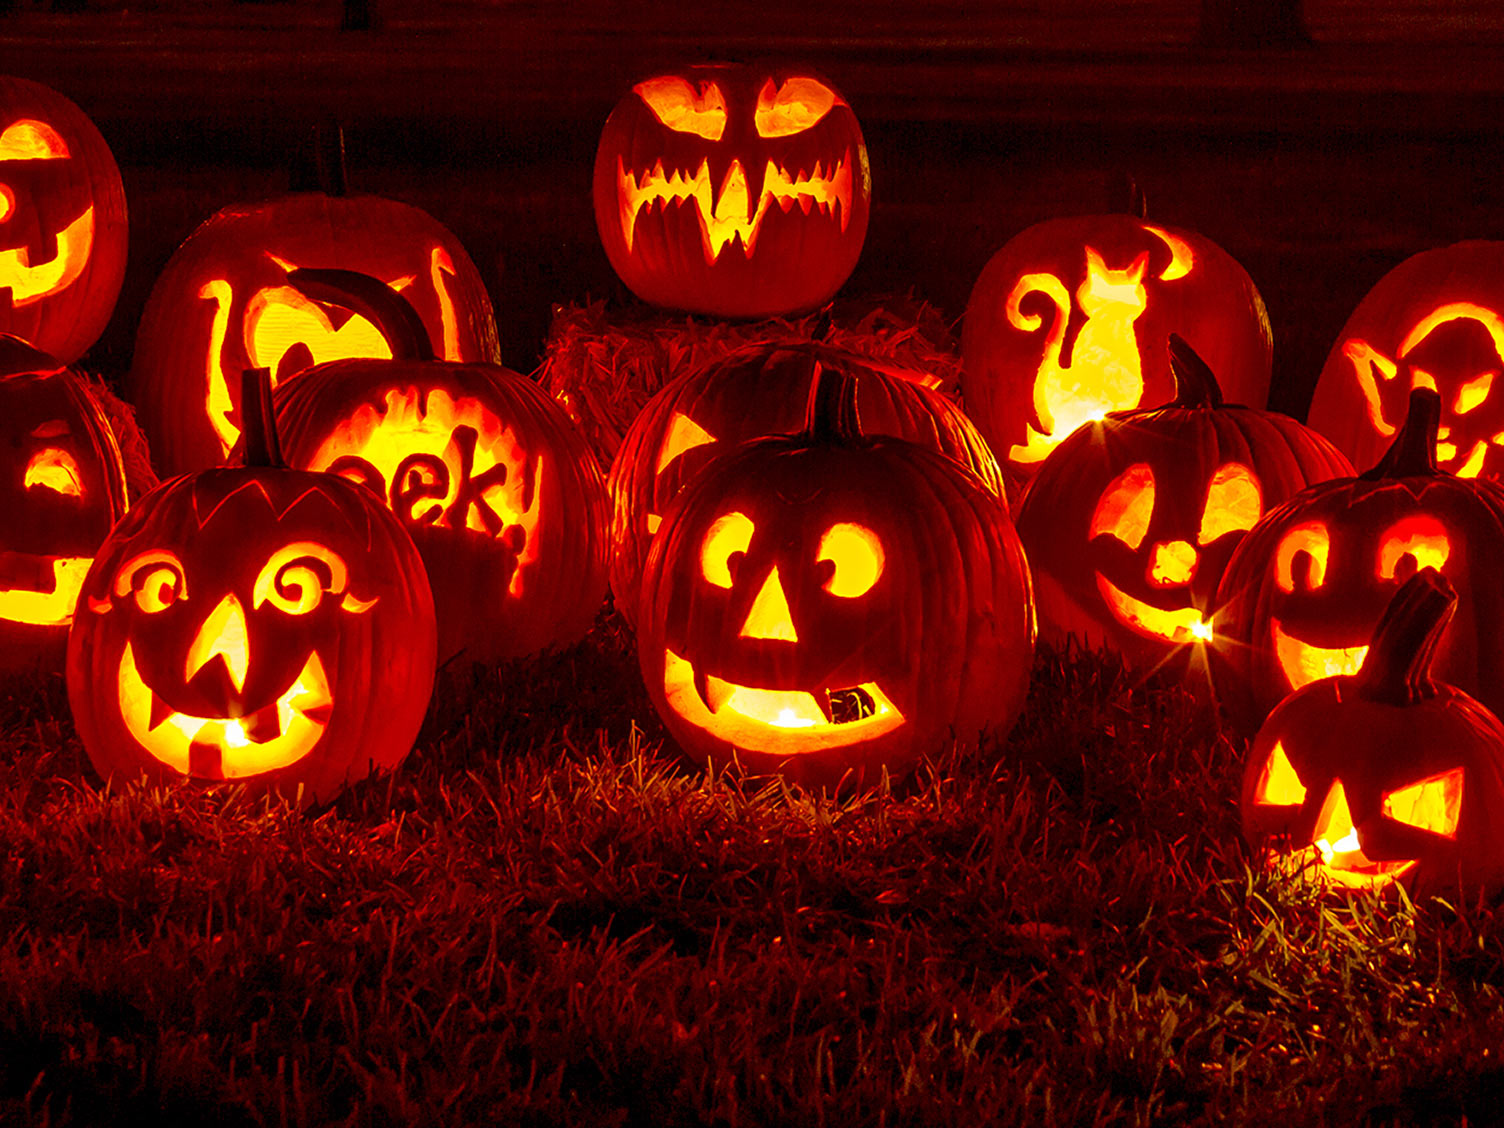 Faire Citrouille Halloween : La Pause Jardin, crÃ©er un citrouille d' halloween